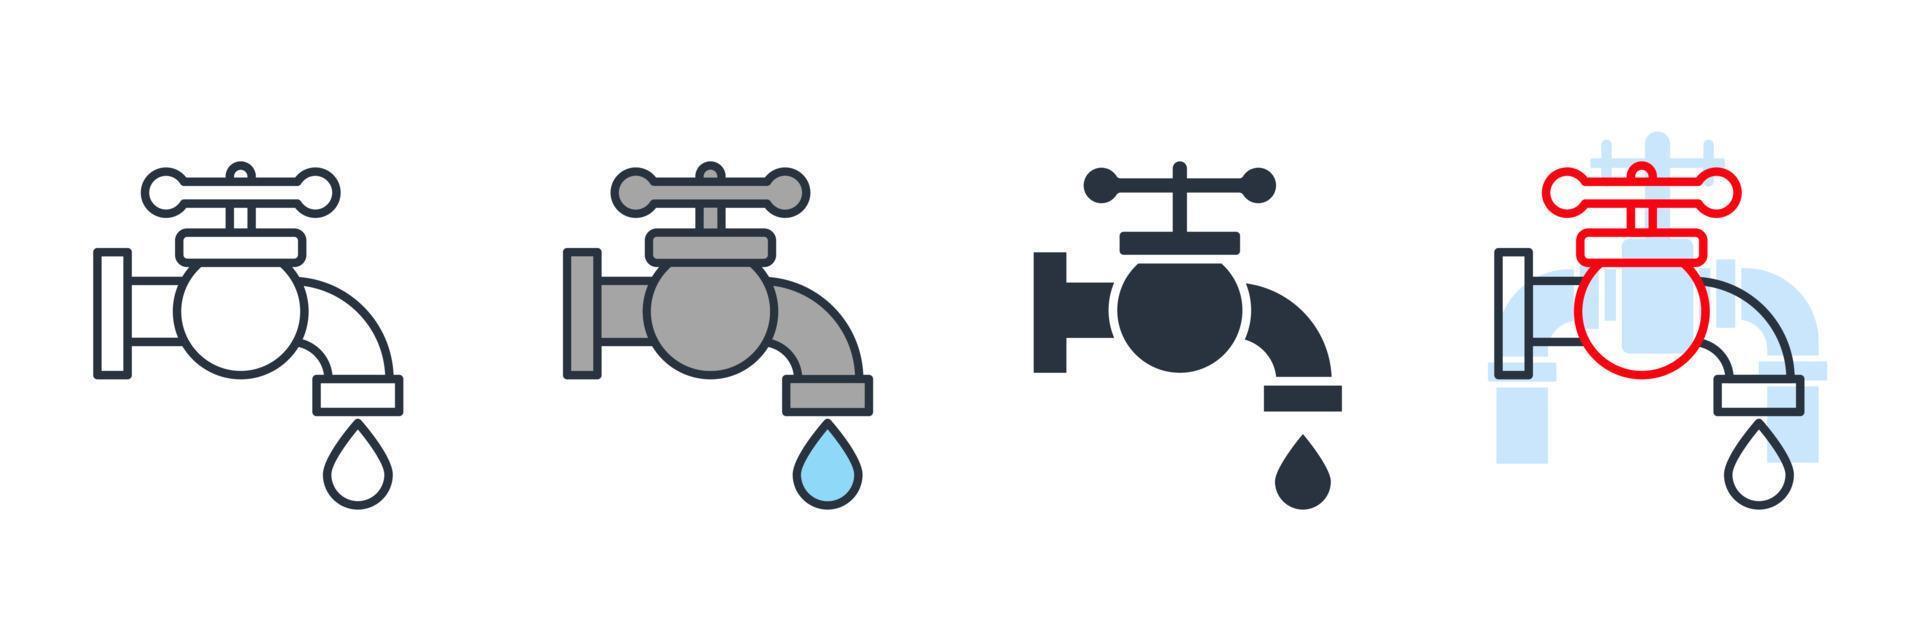 appuyez sur l'illustration vectorielle du logo de l'icône du robinet. modèle de symbole de robinet pour la collection de conception graphique et web vecteur